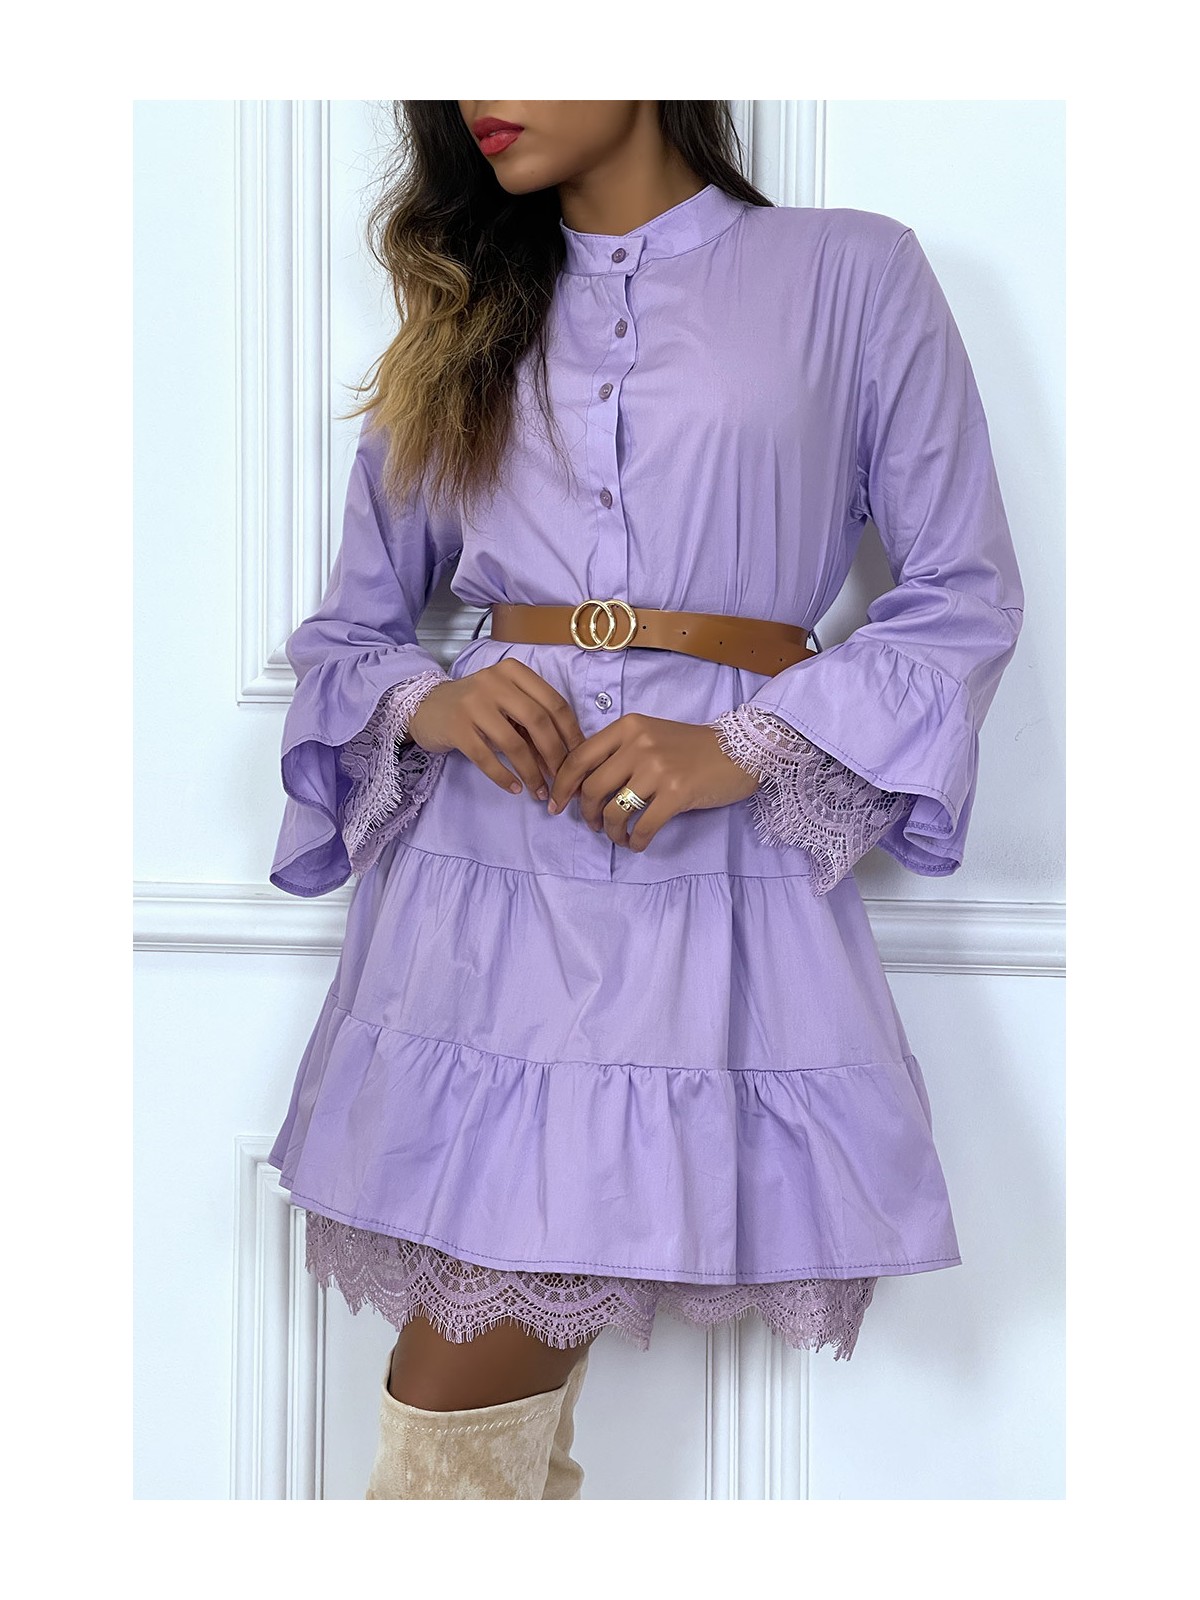 Robe chemise lila avec ceinture volant et dentelle - 3